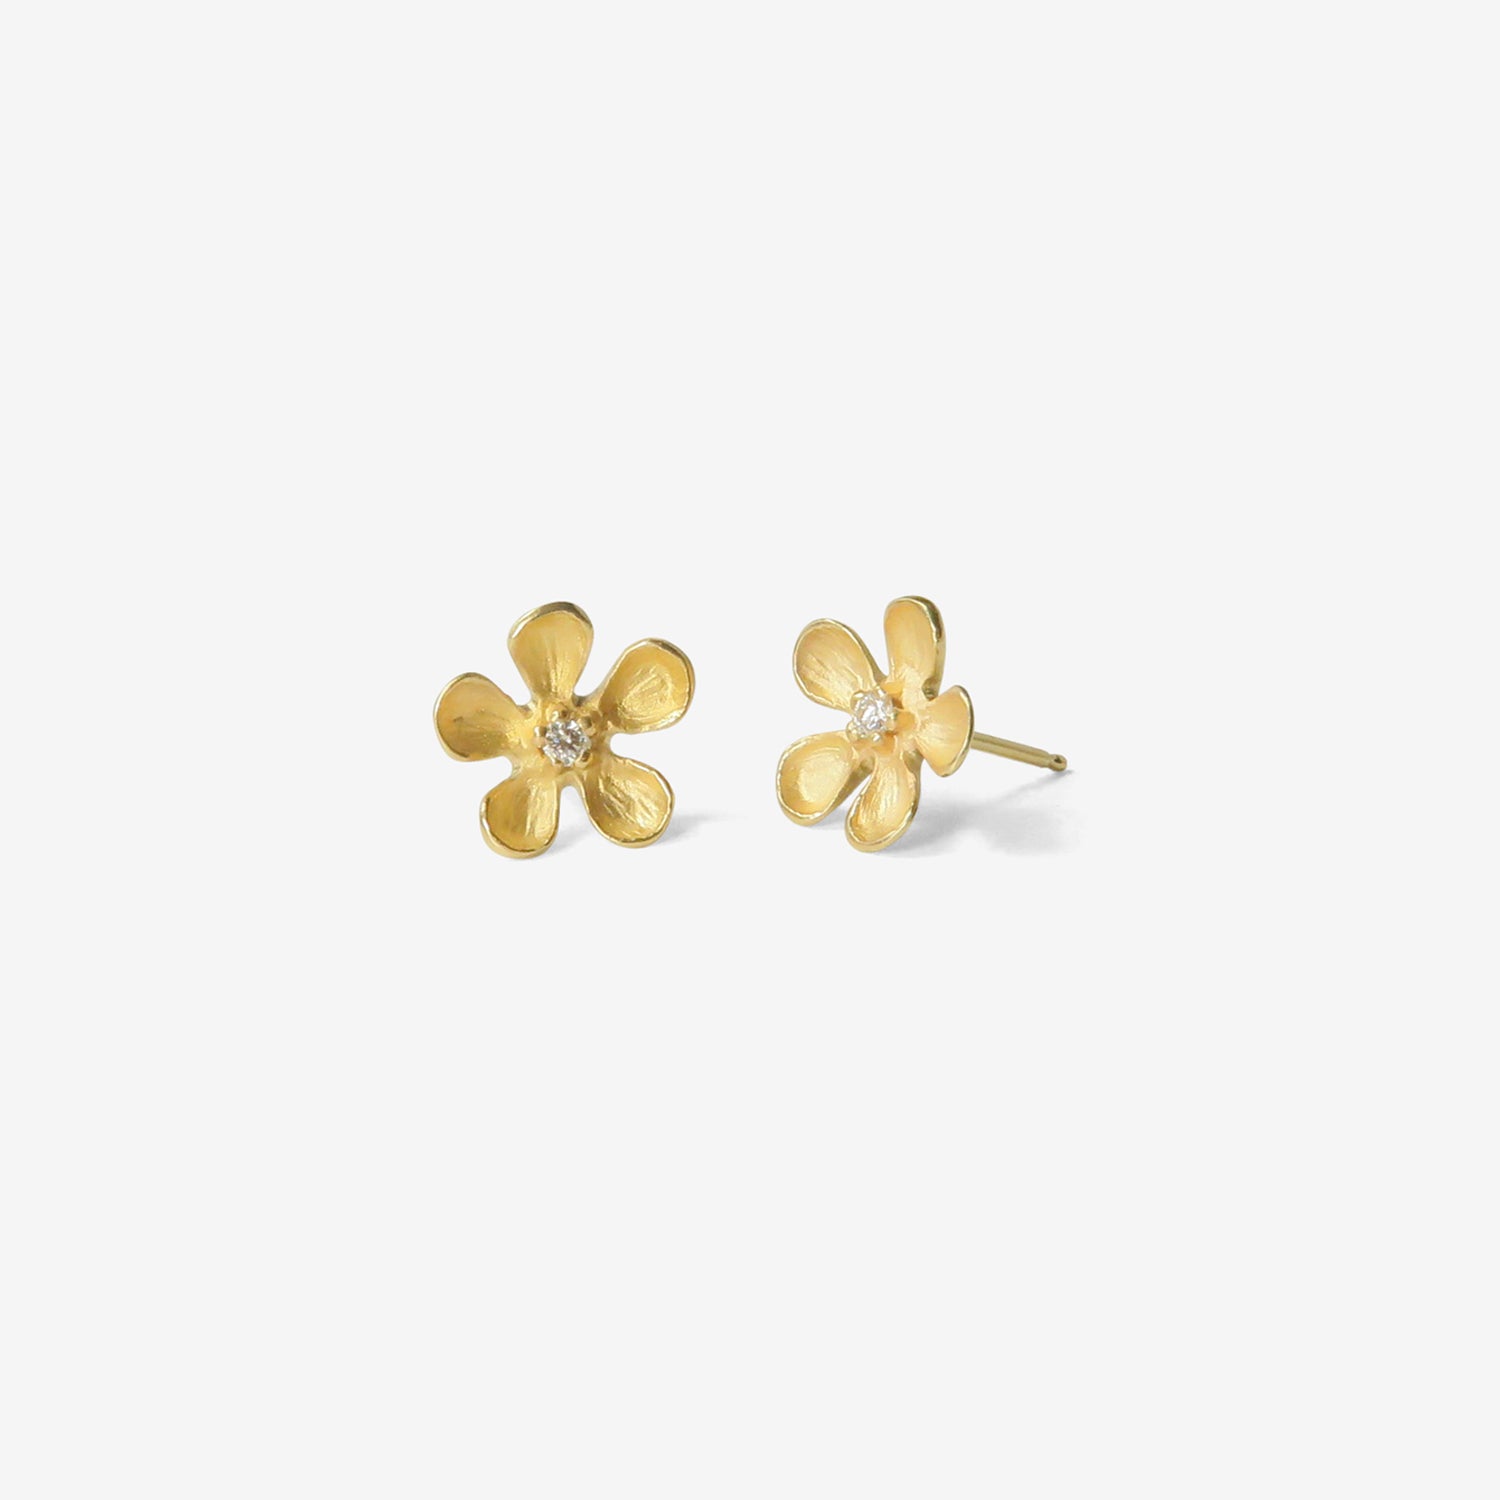 Cute Mirco Pave Black Gold Purple CZ Women Party Large Flower Stud Earrings  Gift | eBay